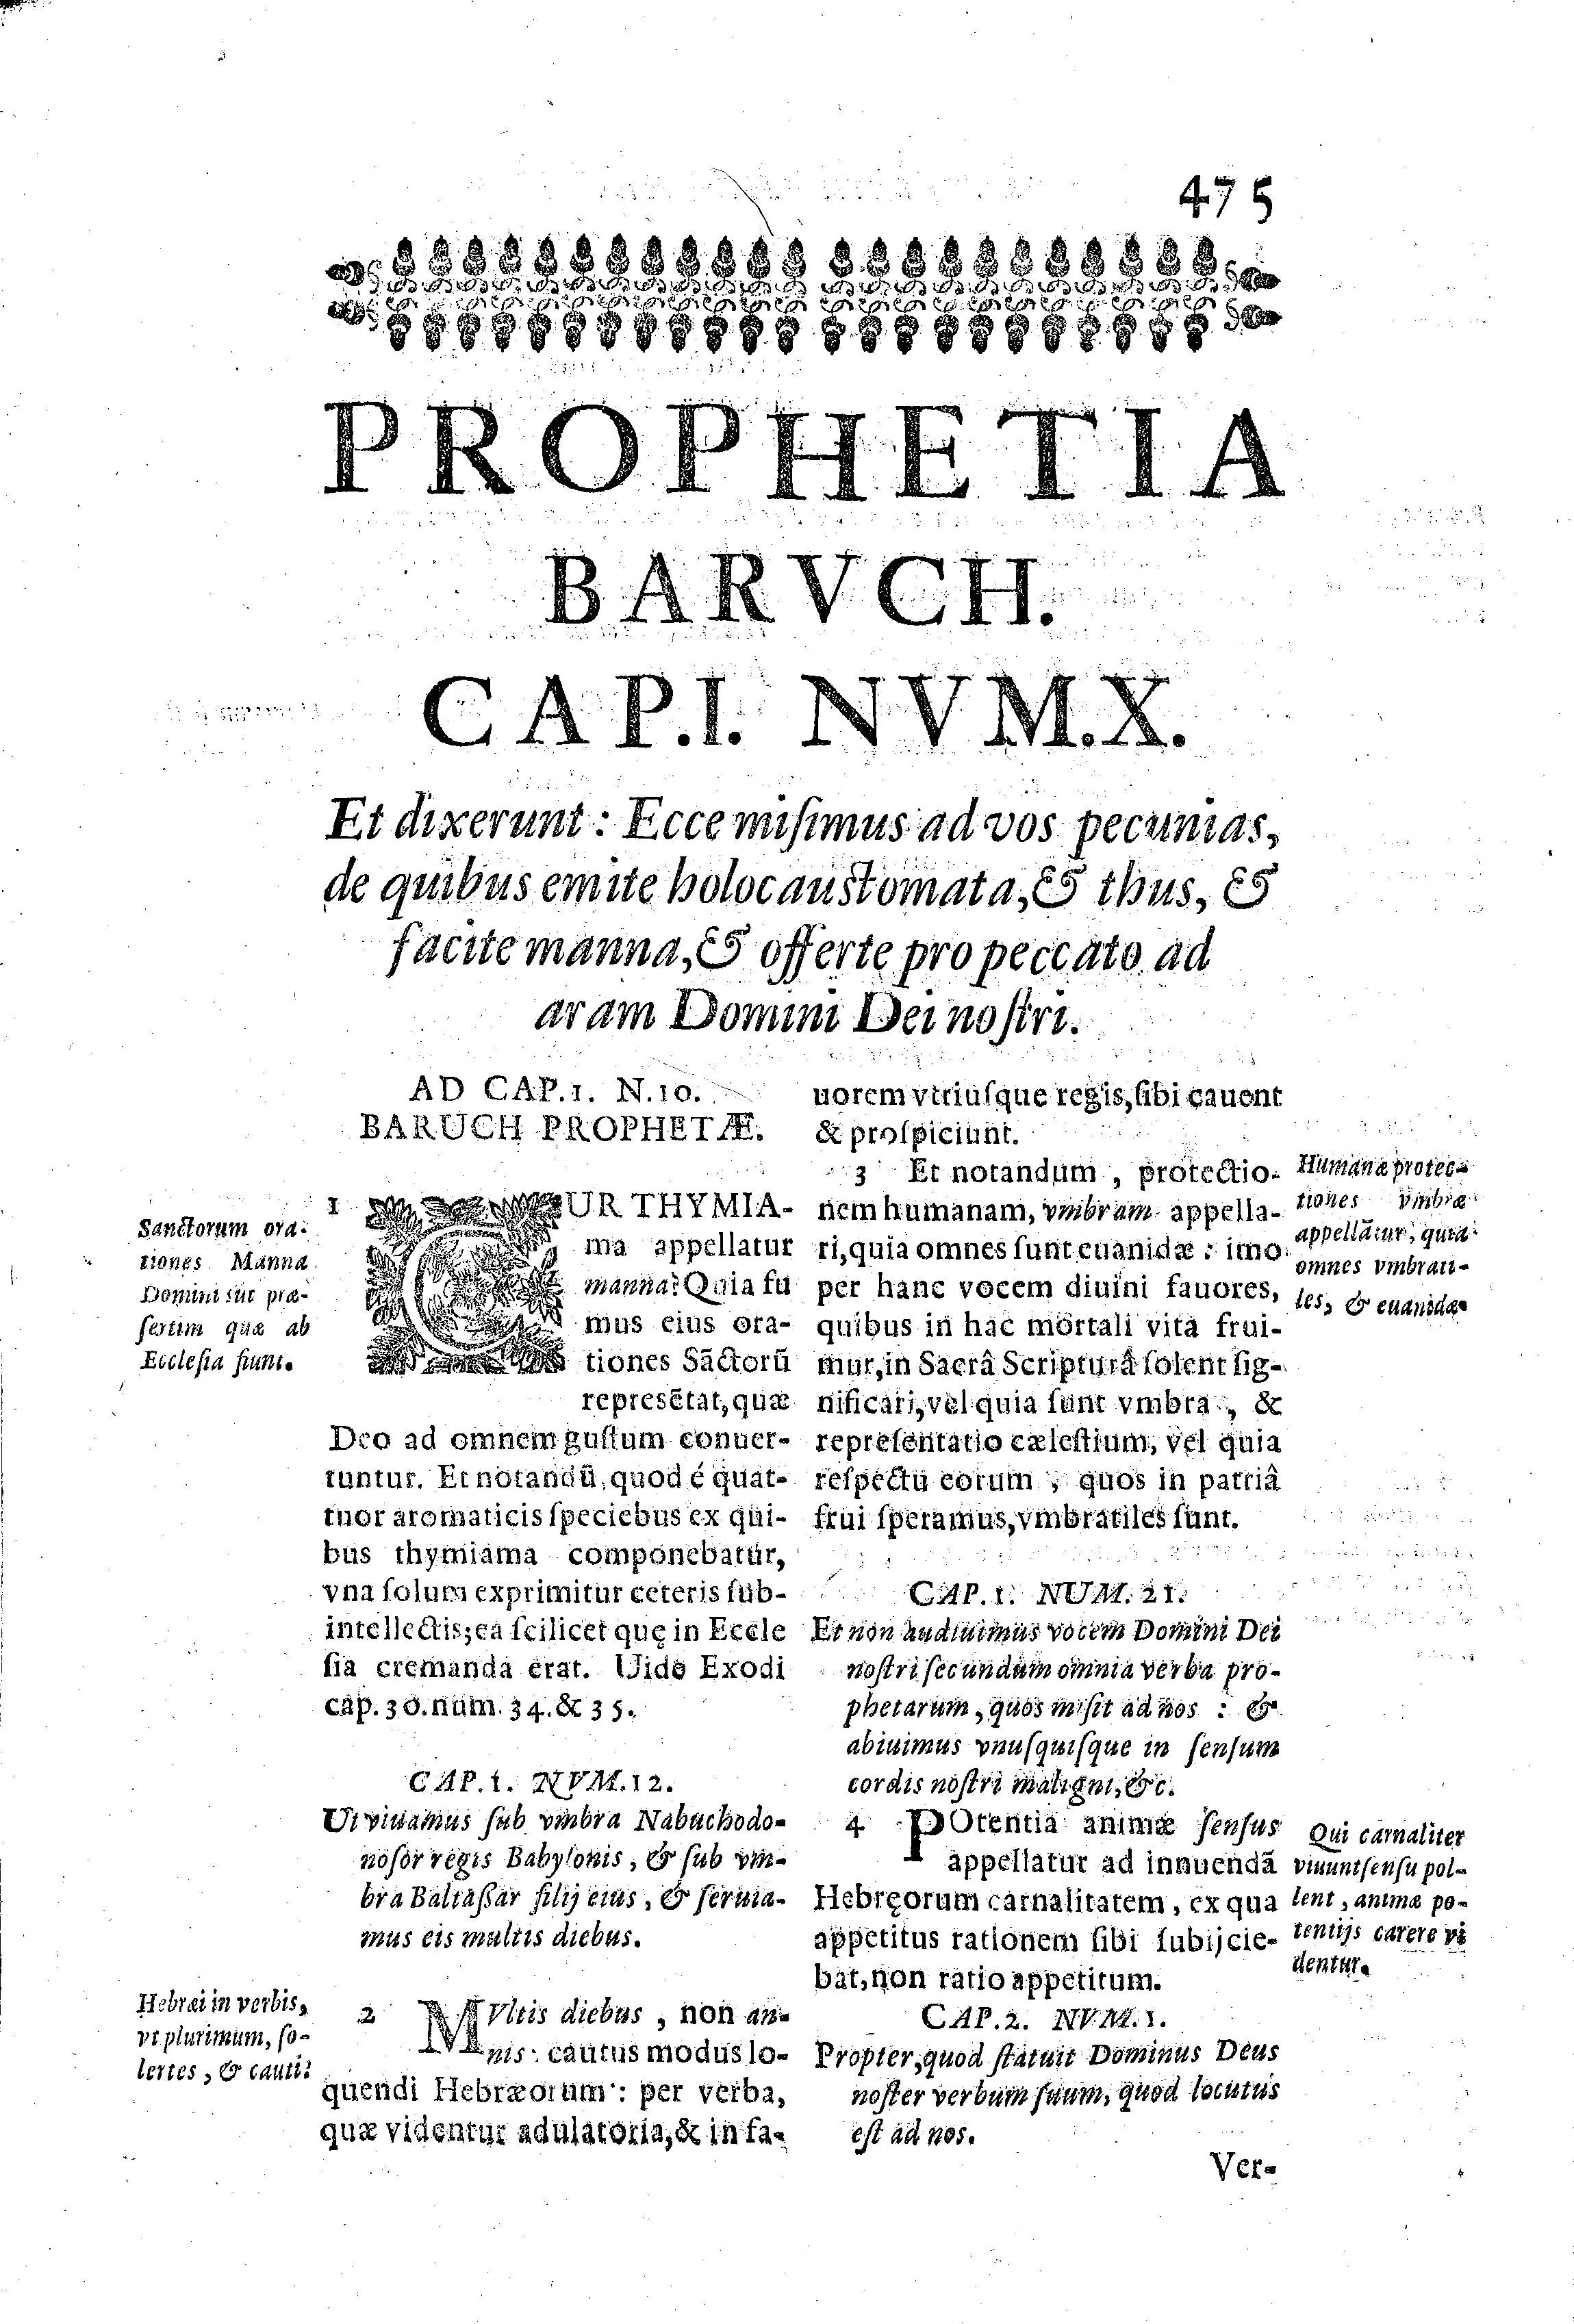 Prophetia Barvch. Cap.I. Nvm.X. Et dixerunt